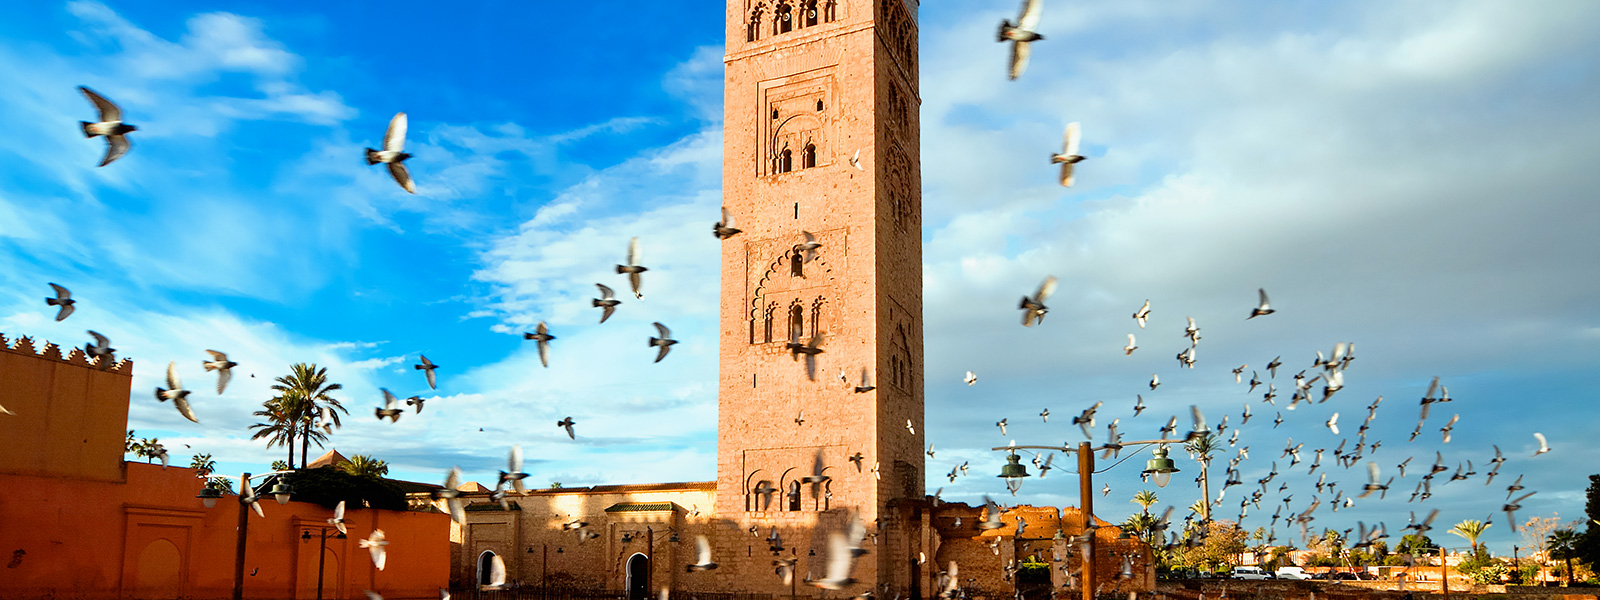 marrakesh1.jpg